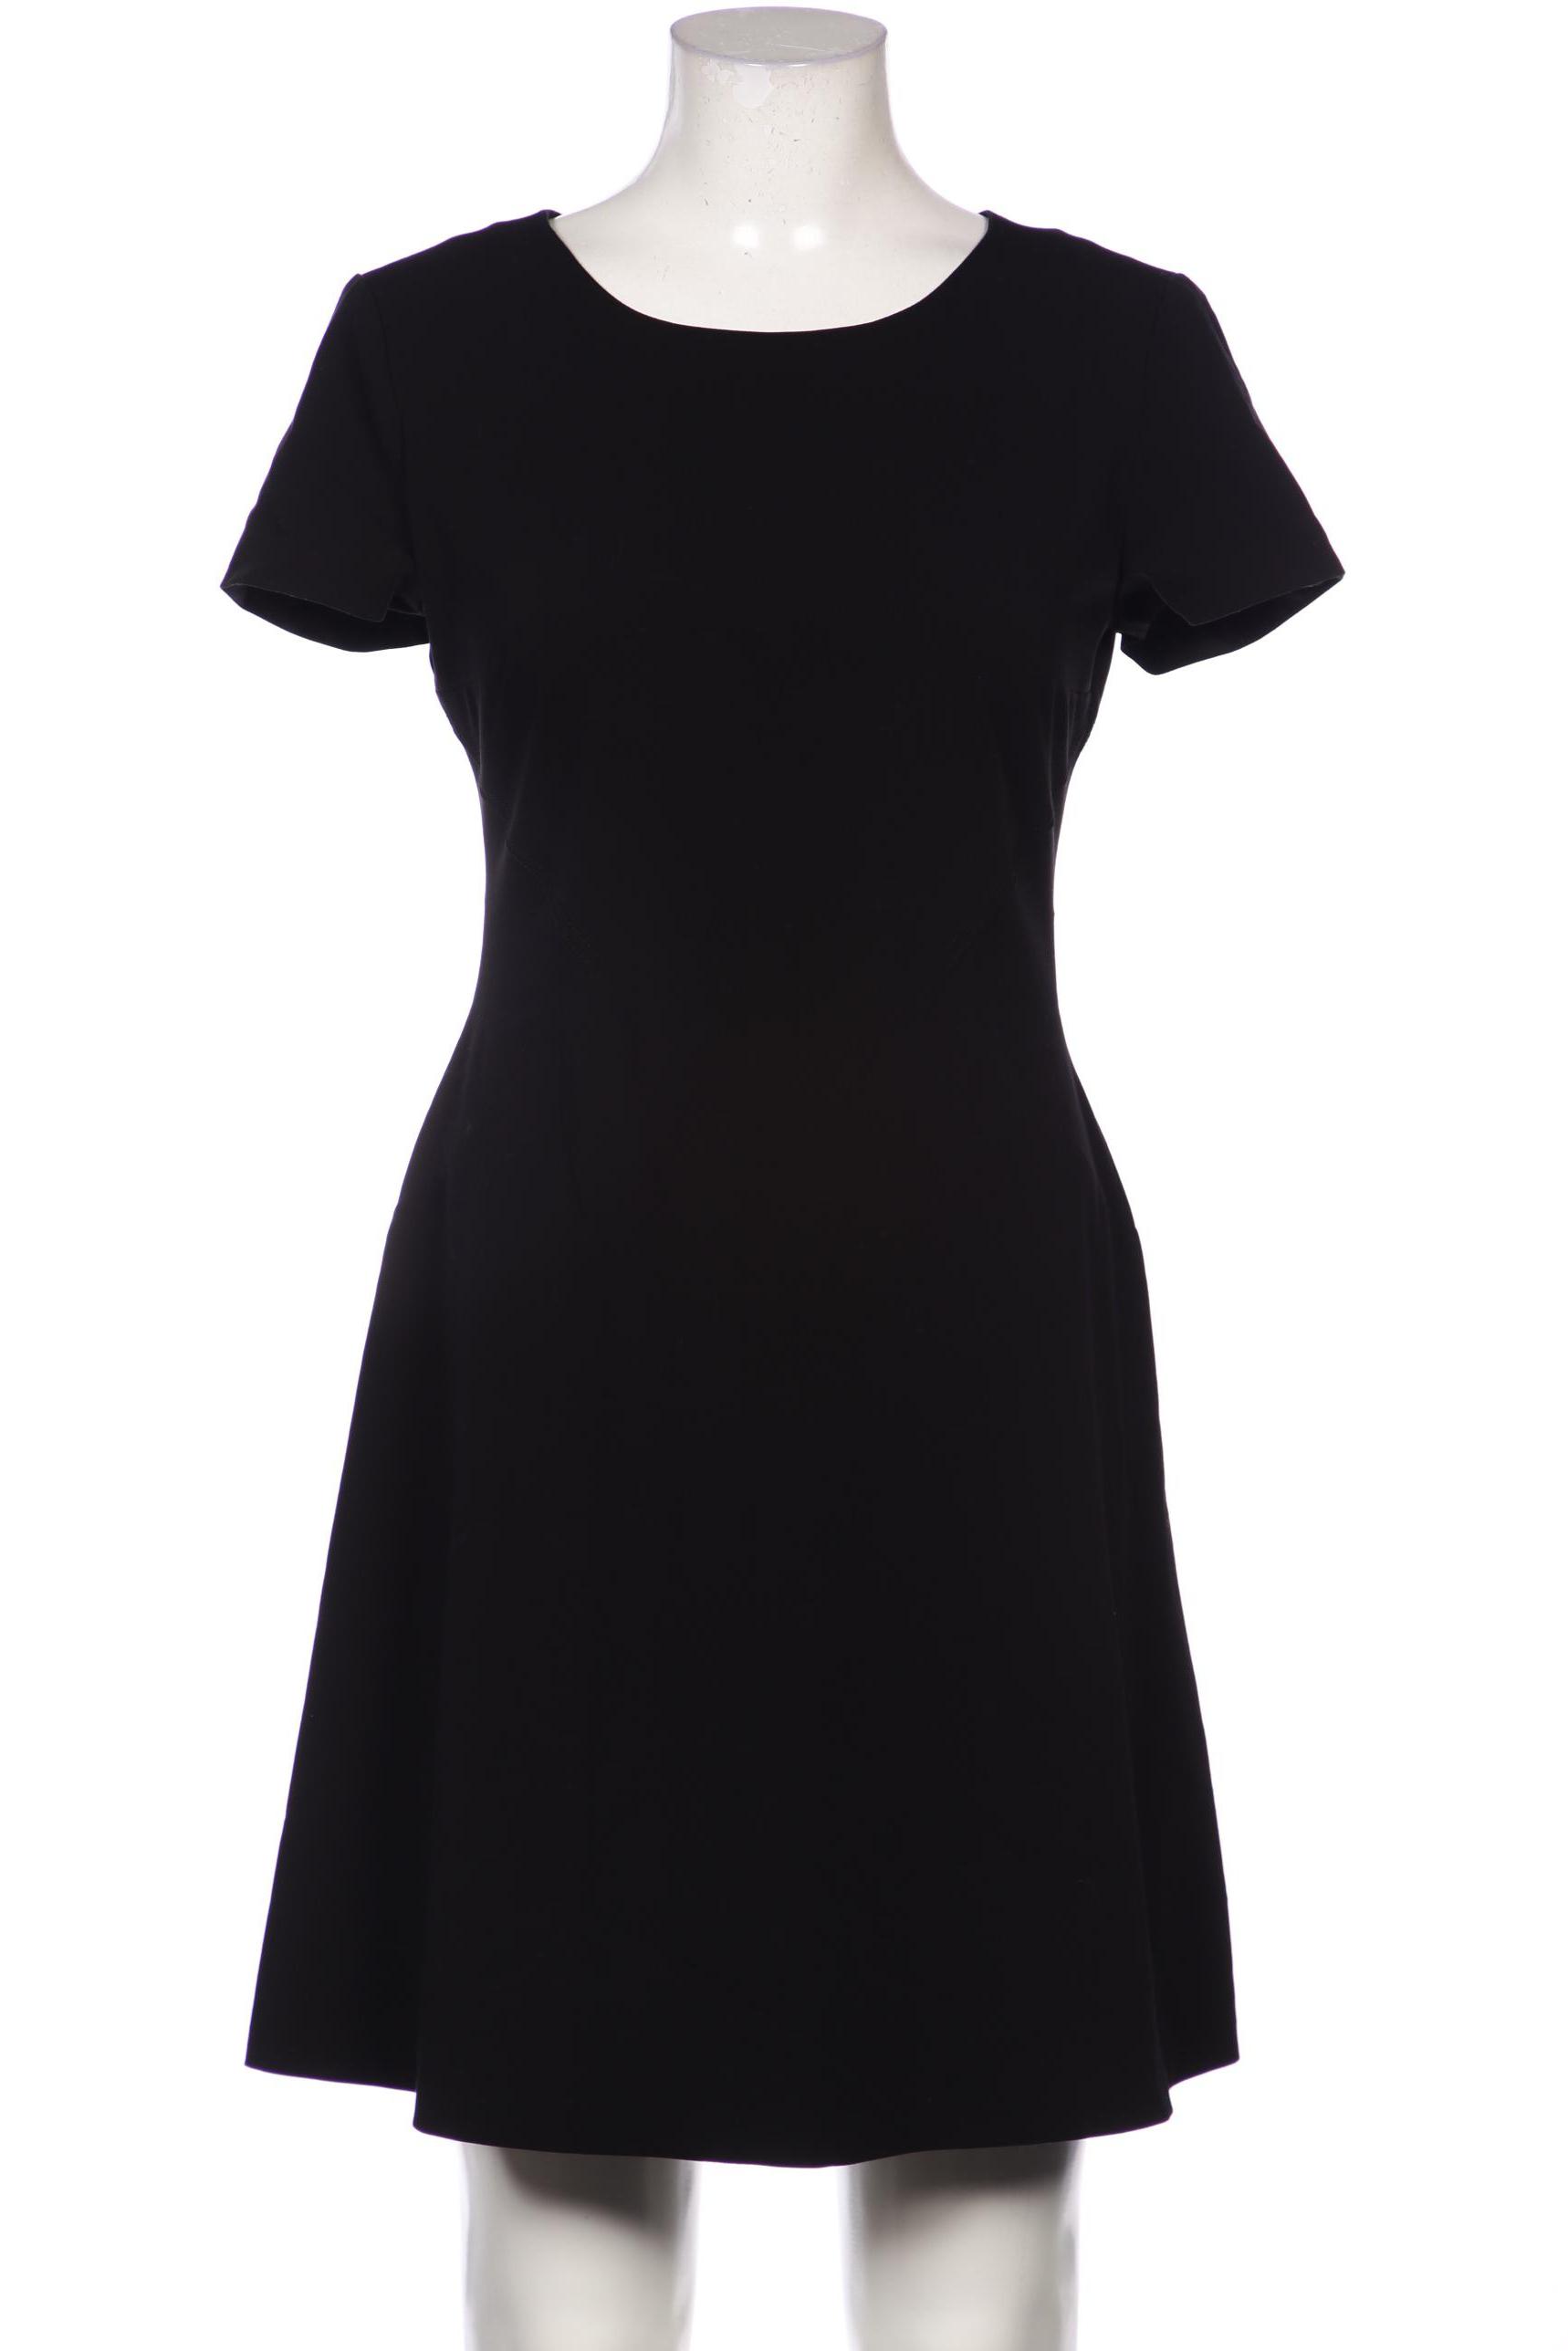 Stefanel Damen Kleid, schwarz von Stefanel